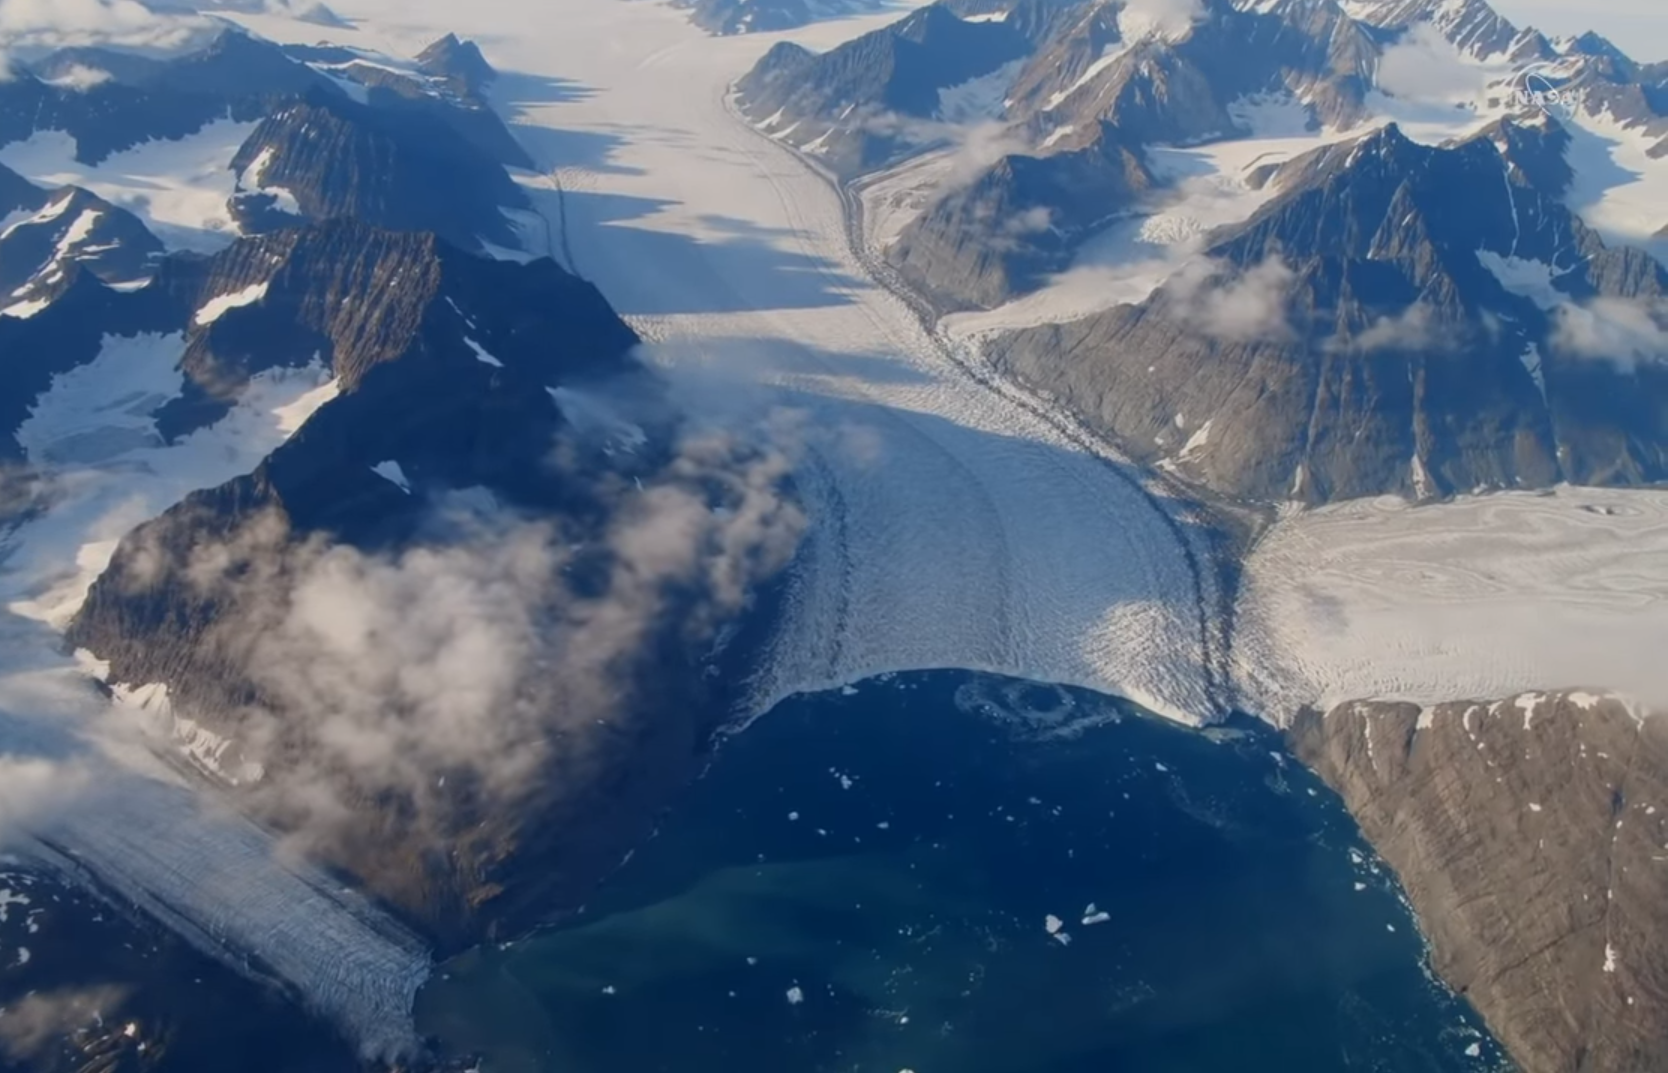 Le glacier Jakobshavn est le plus grand glacier du Groenland, mais aussi celui qui s'écoule et qui perd de la glace le plus rapidement du pays. Il est en recul continu depuis le début des années 2000. Baigné par des eaux historiquement plus froides depuis 2016, il a cependant ralenti et recommencé à s'épaissir… provisoirement. © Nasa's Goddard Space Flight Center/Kathryn Mersmann